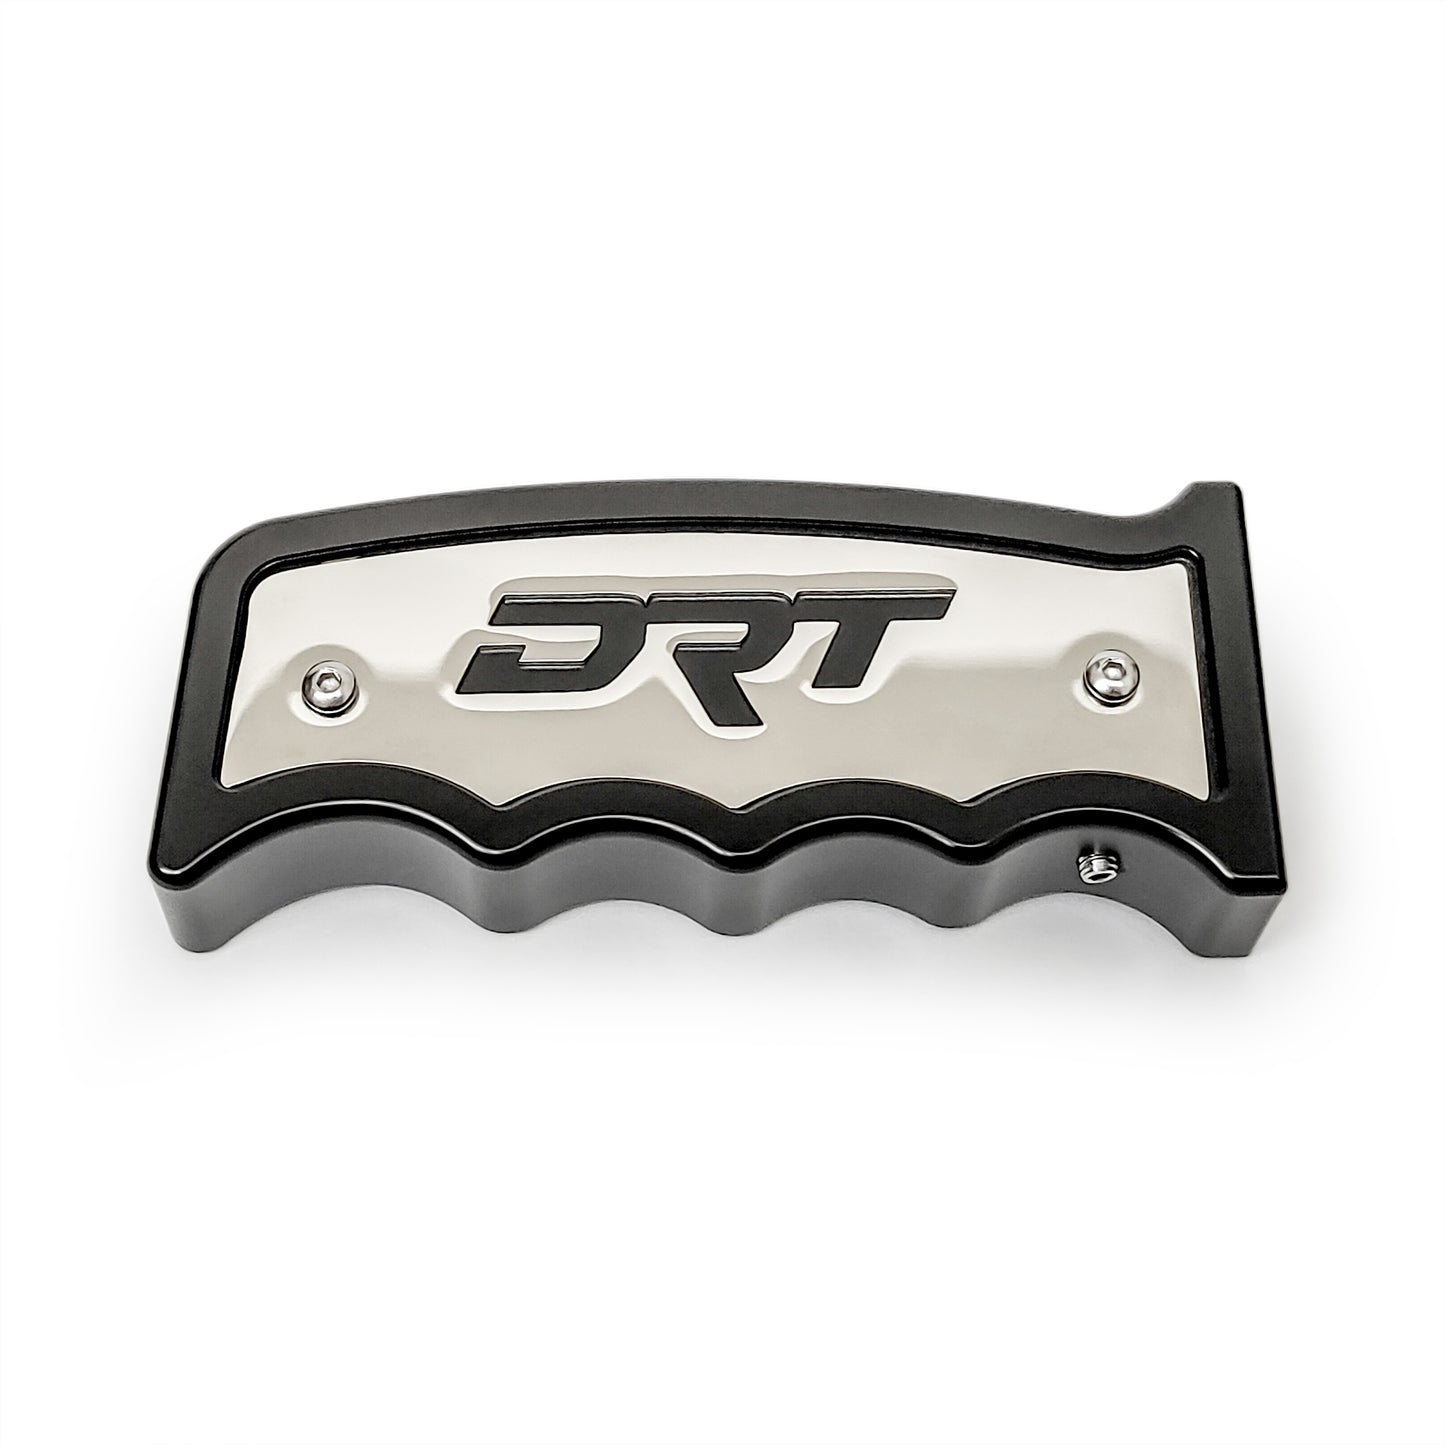 DRT Motorsports Grip Shifter V2.0 View #2